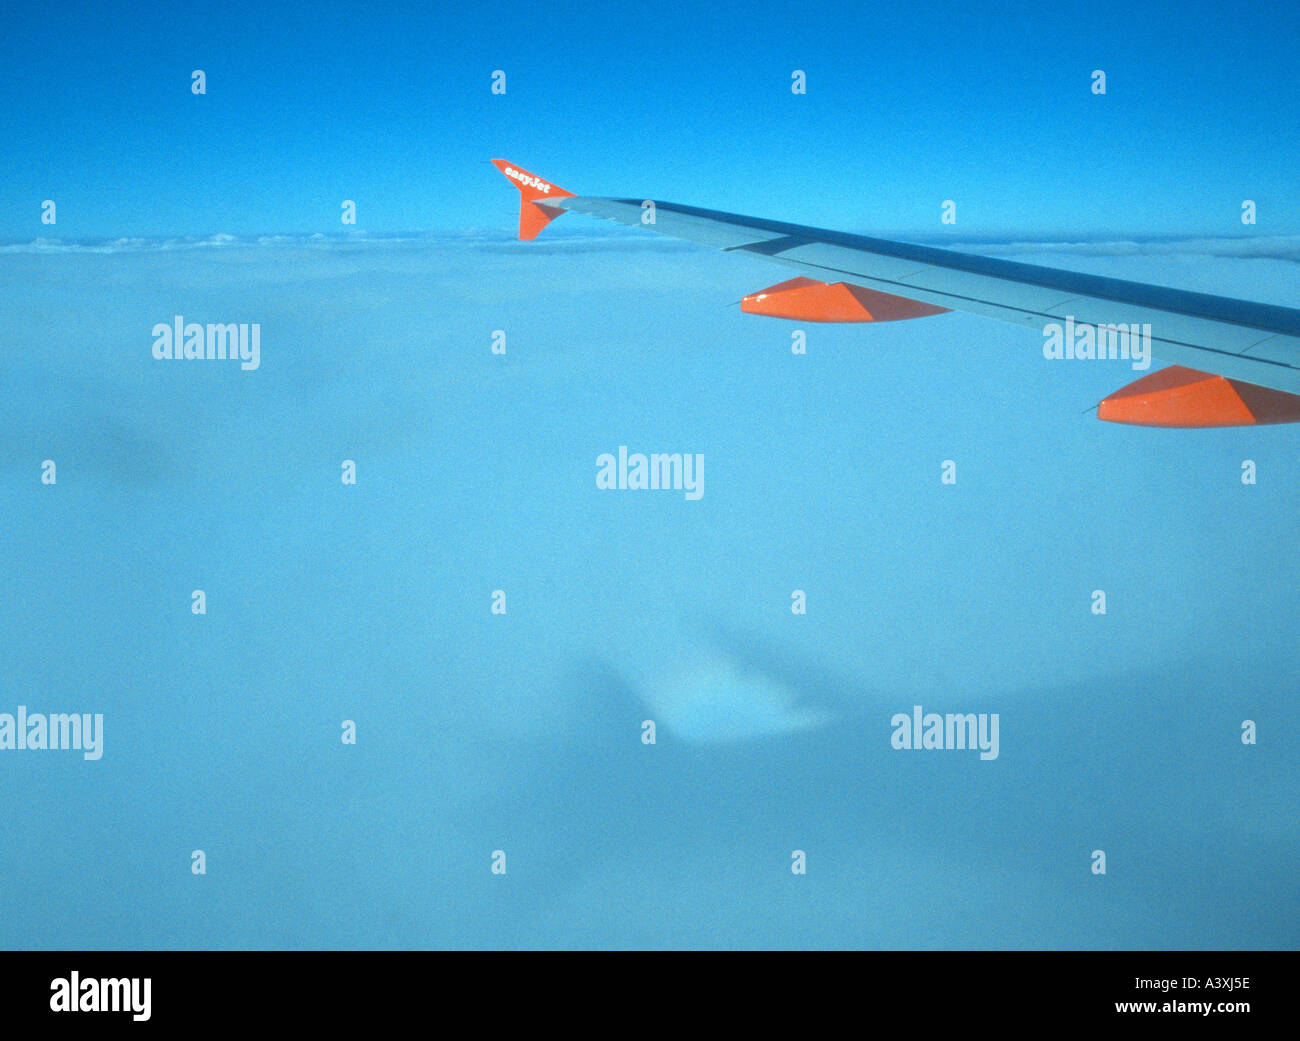 Flügel von Easyjet Budget low-cost Airline Flugzeug mit Himmel Wolken Hintergrund Flugzeug Reflexion Stockfoto